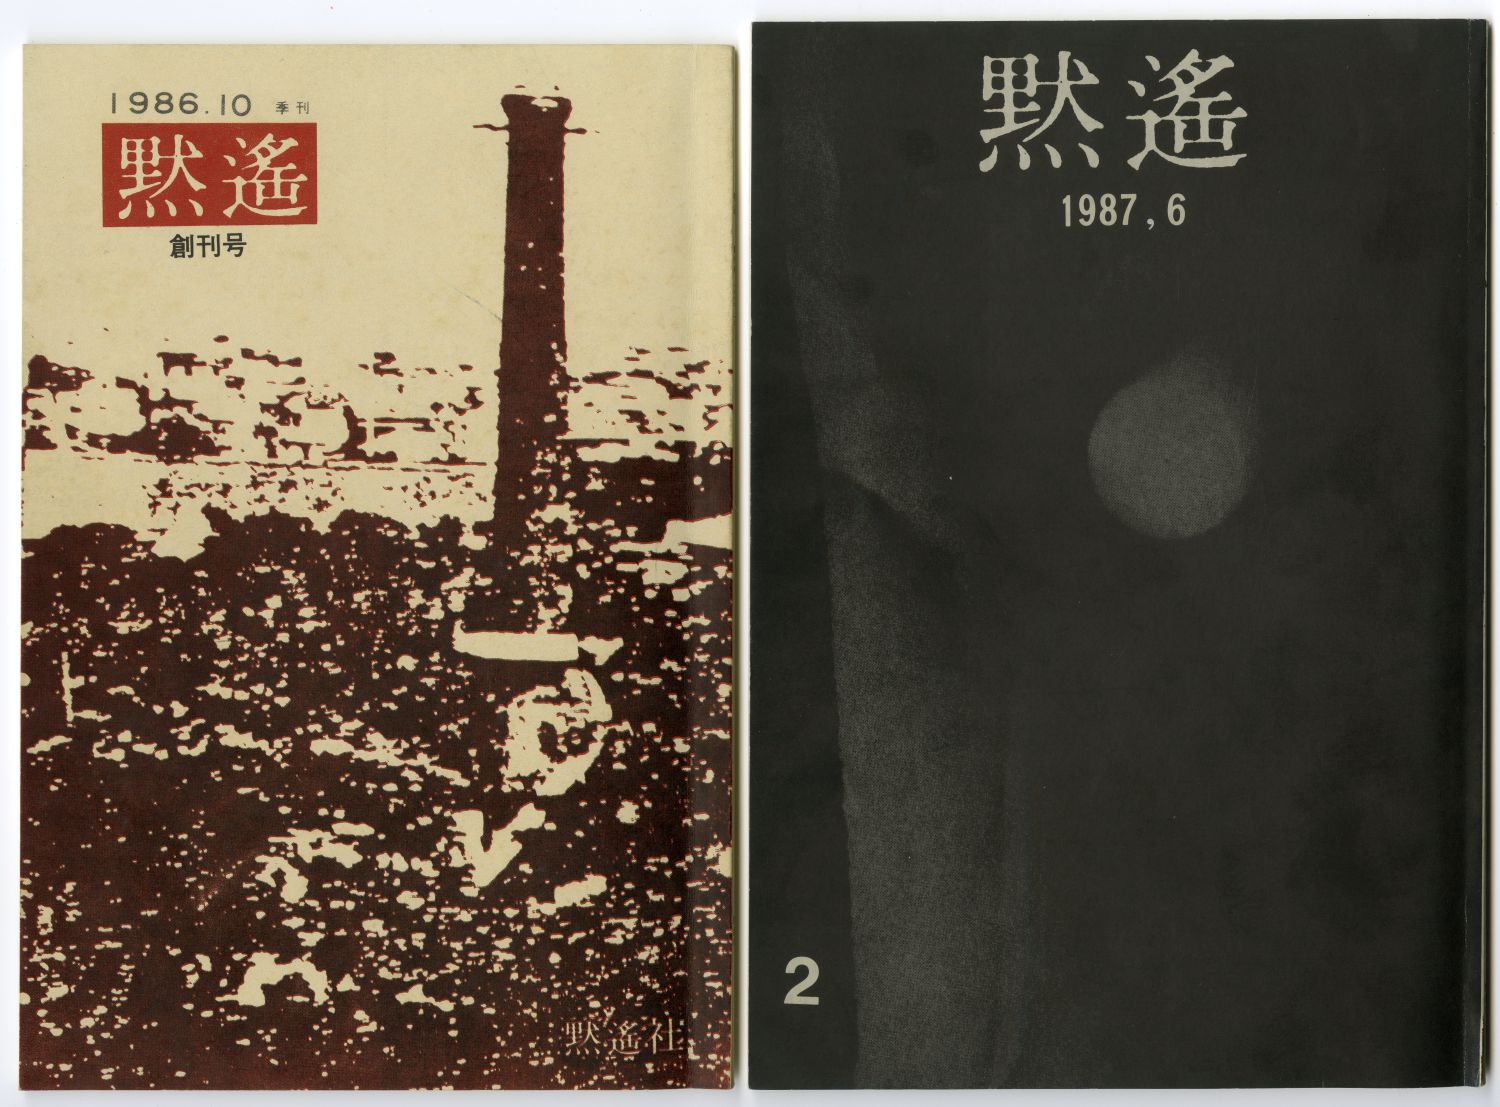 『黙遙』創刊号（1986年10月、黙遙社） と『黙遙』第2号（1987年6月、黙遙社）